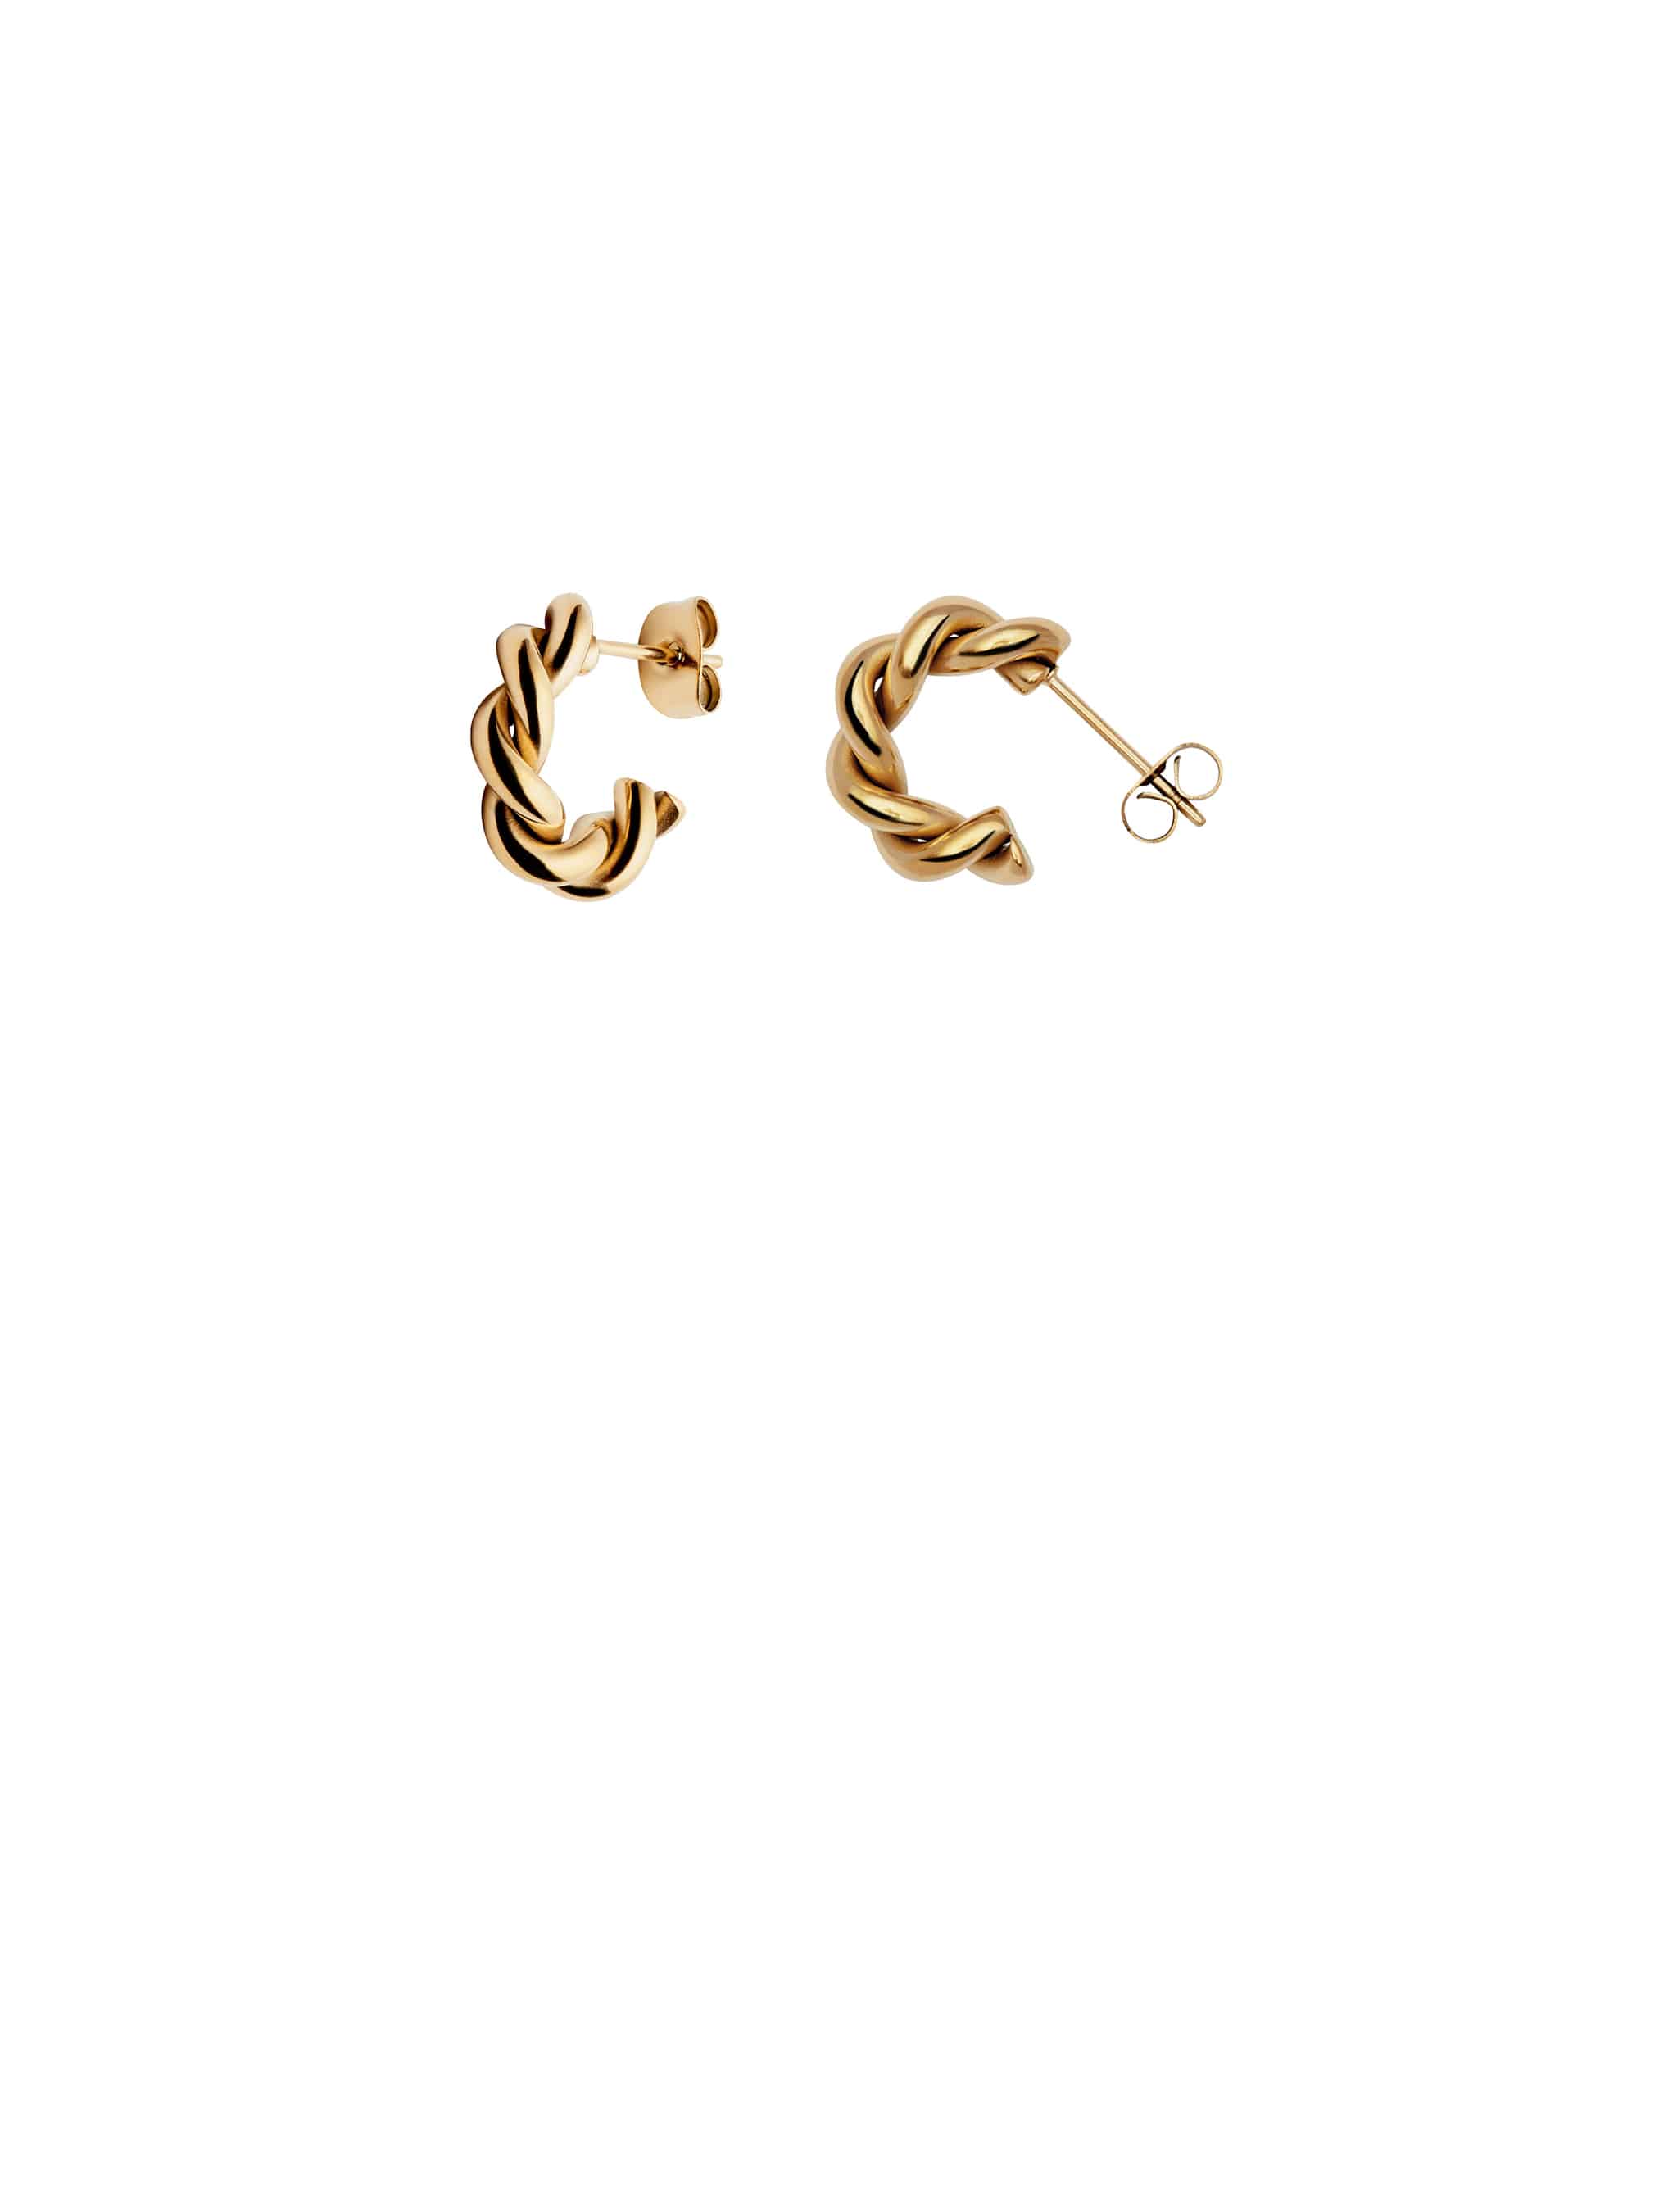 Gold Ridge Twist Hoop Earrings | Waterproof | Gift Boxed | by Nordic Muse - Lifestory - Nordic Muse